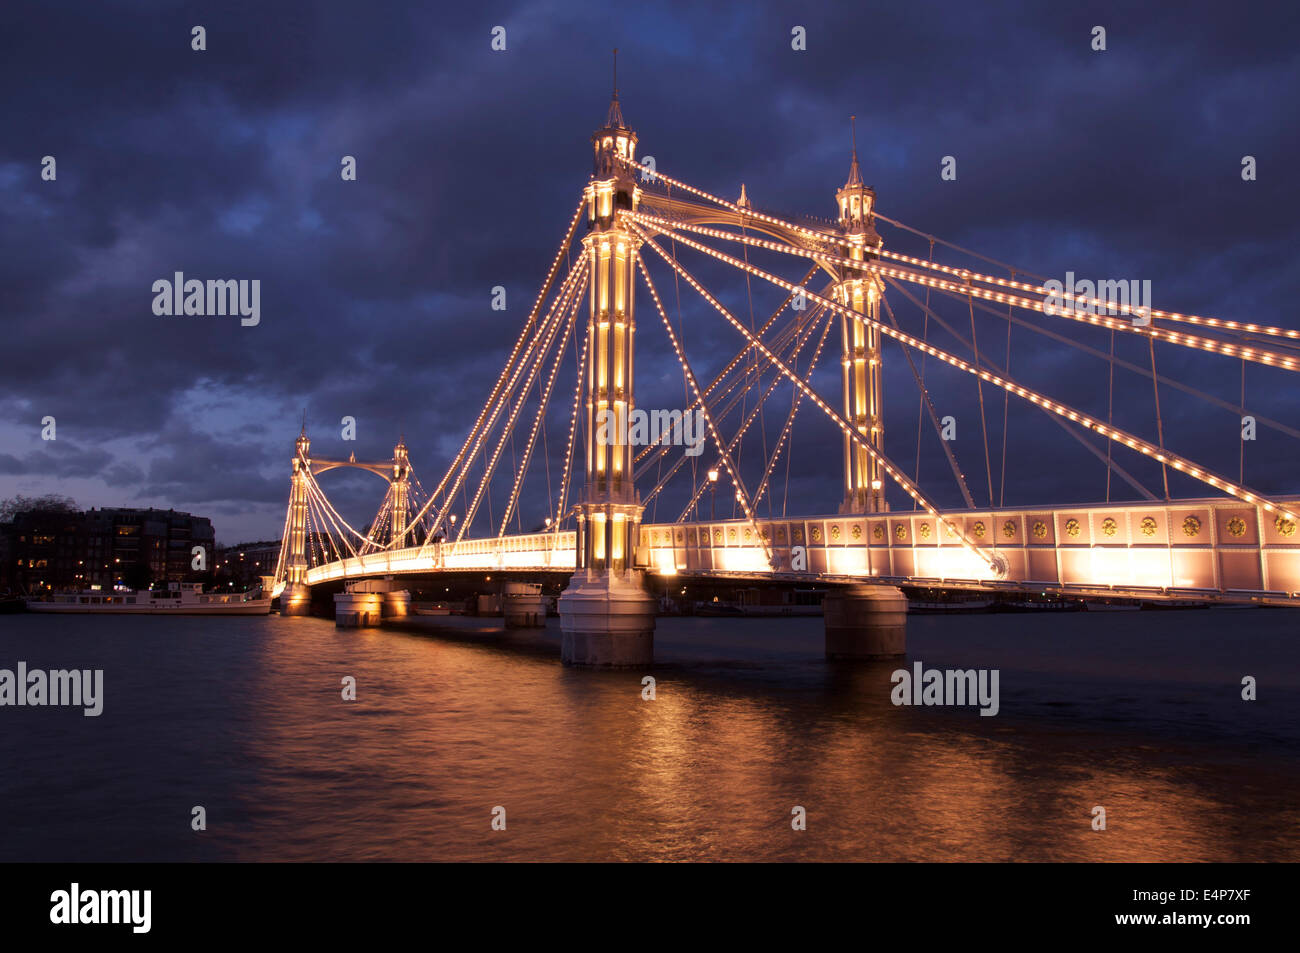 La lumineuse splendeur victorienne d'Albert Bridge, allumé à la tombée de la nuit, en traversant la Tamise entre Battersea et Chelsea. Londres, Angleterre. UK. Banque D'Images